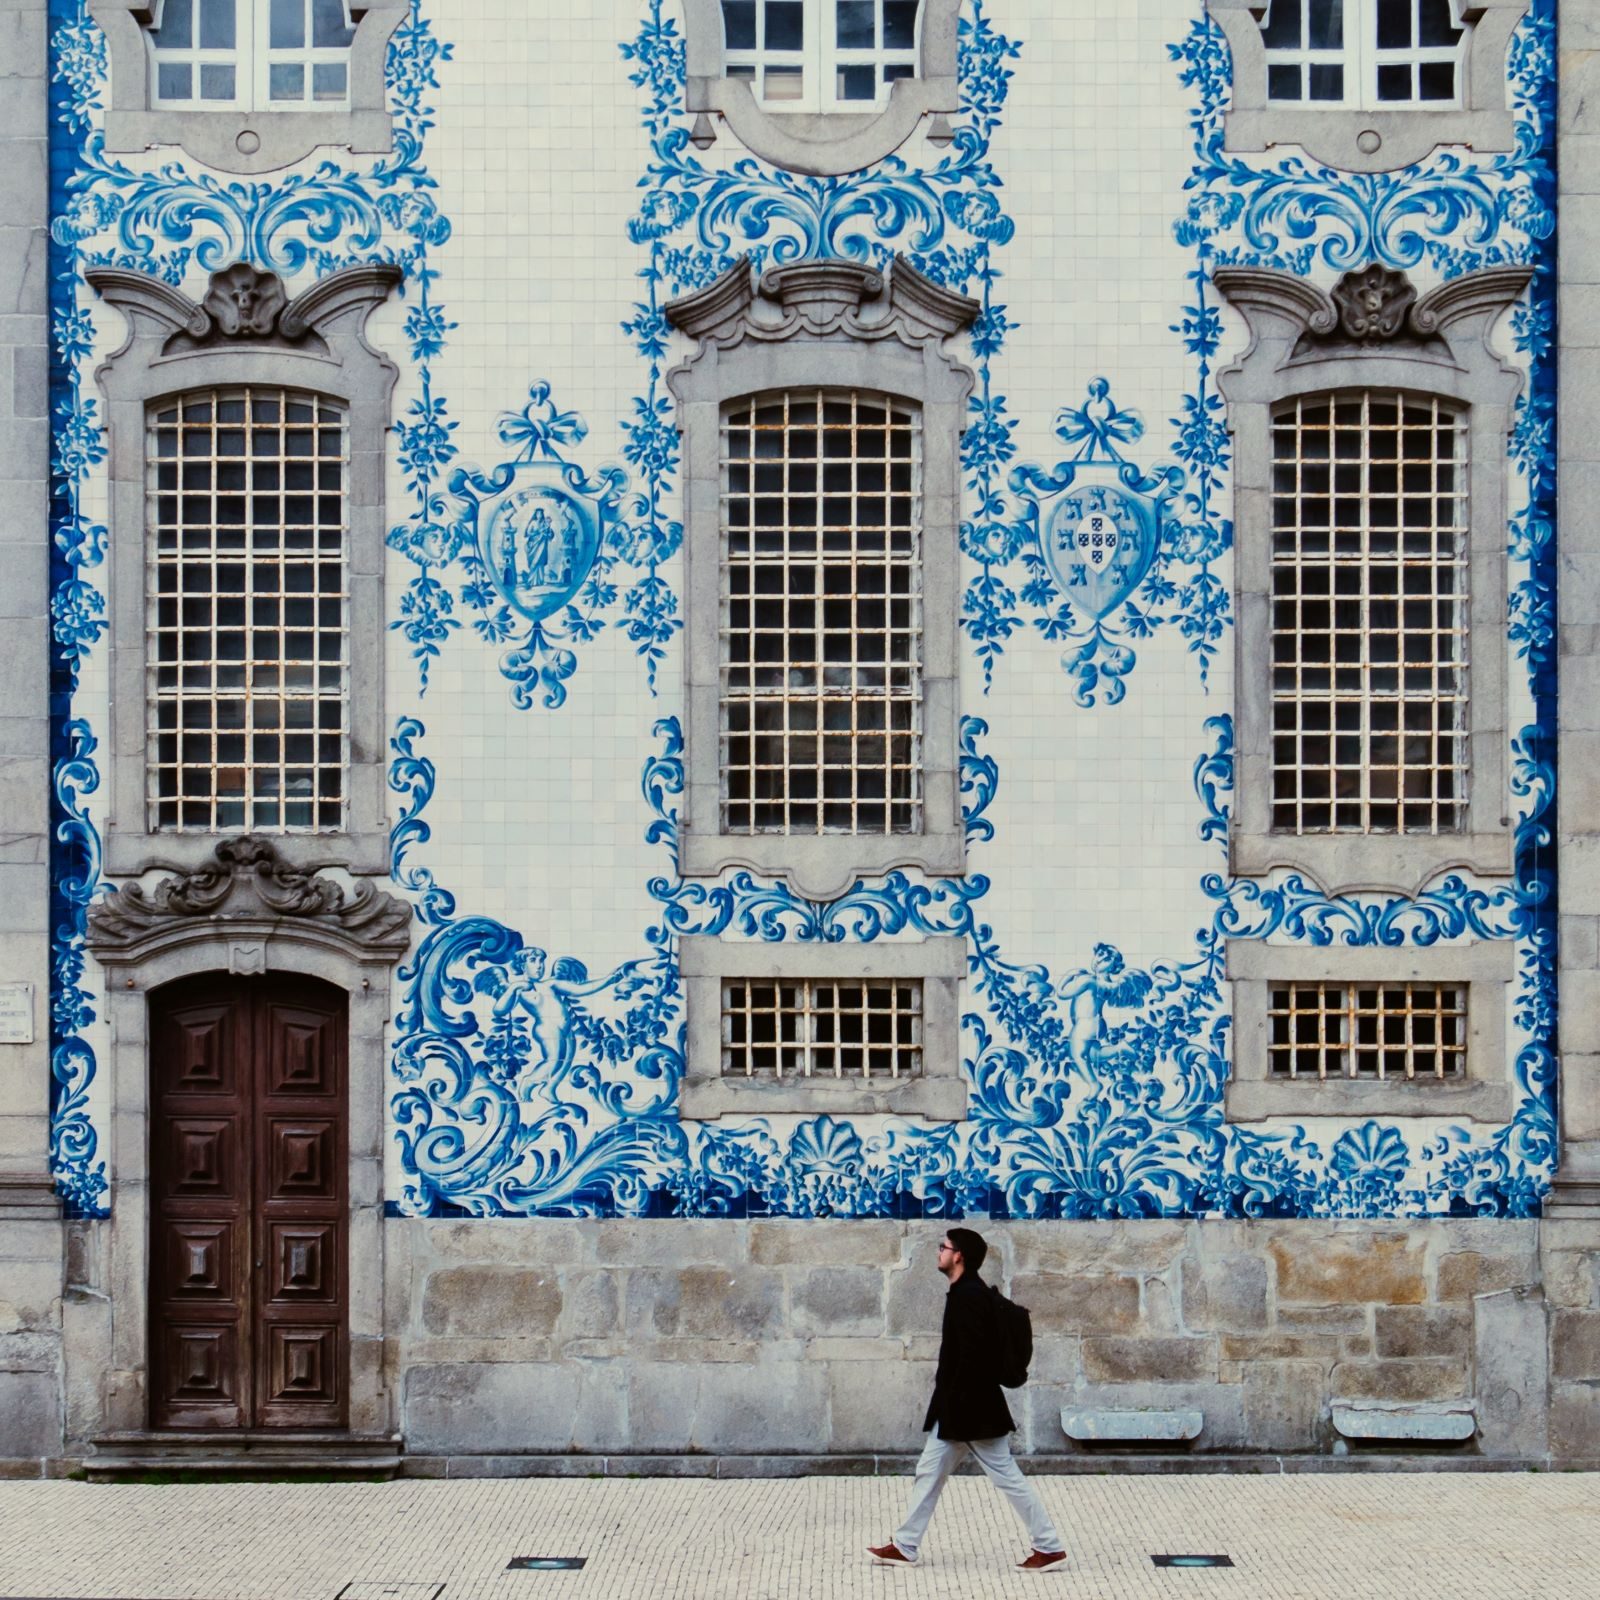 Überwintern in Portugal- Buntes Haus davor läuft ein Mann